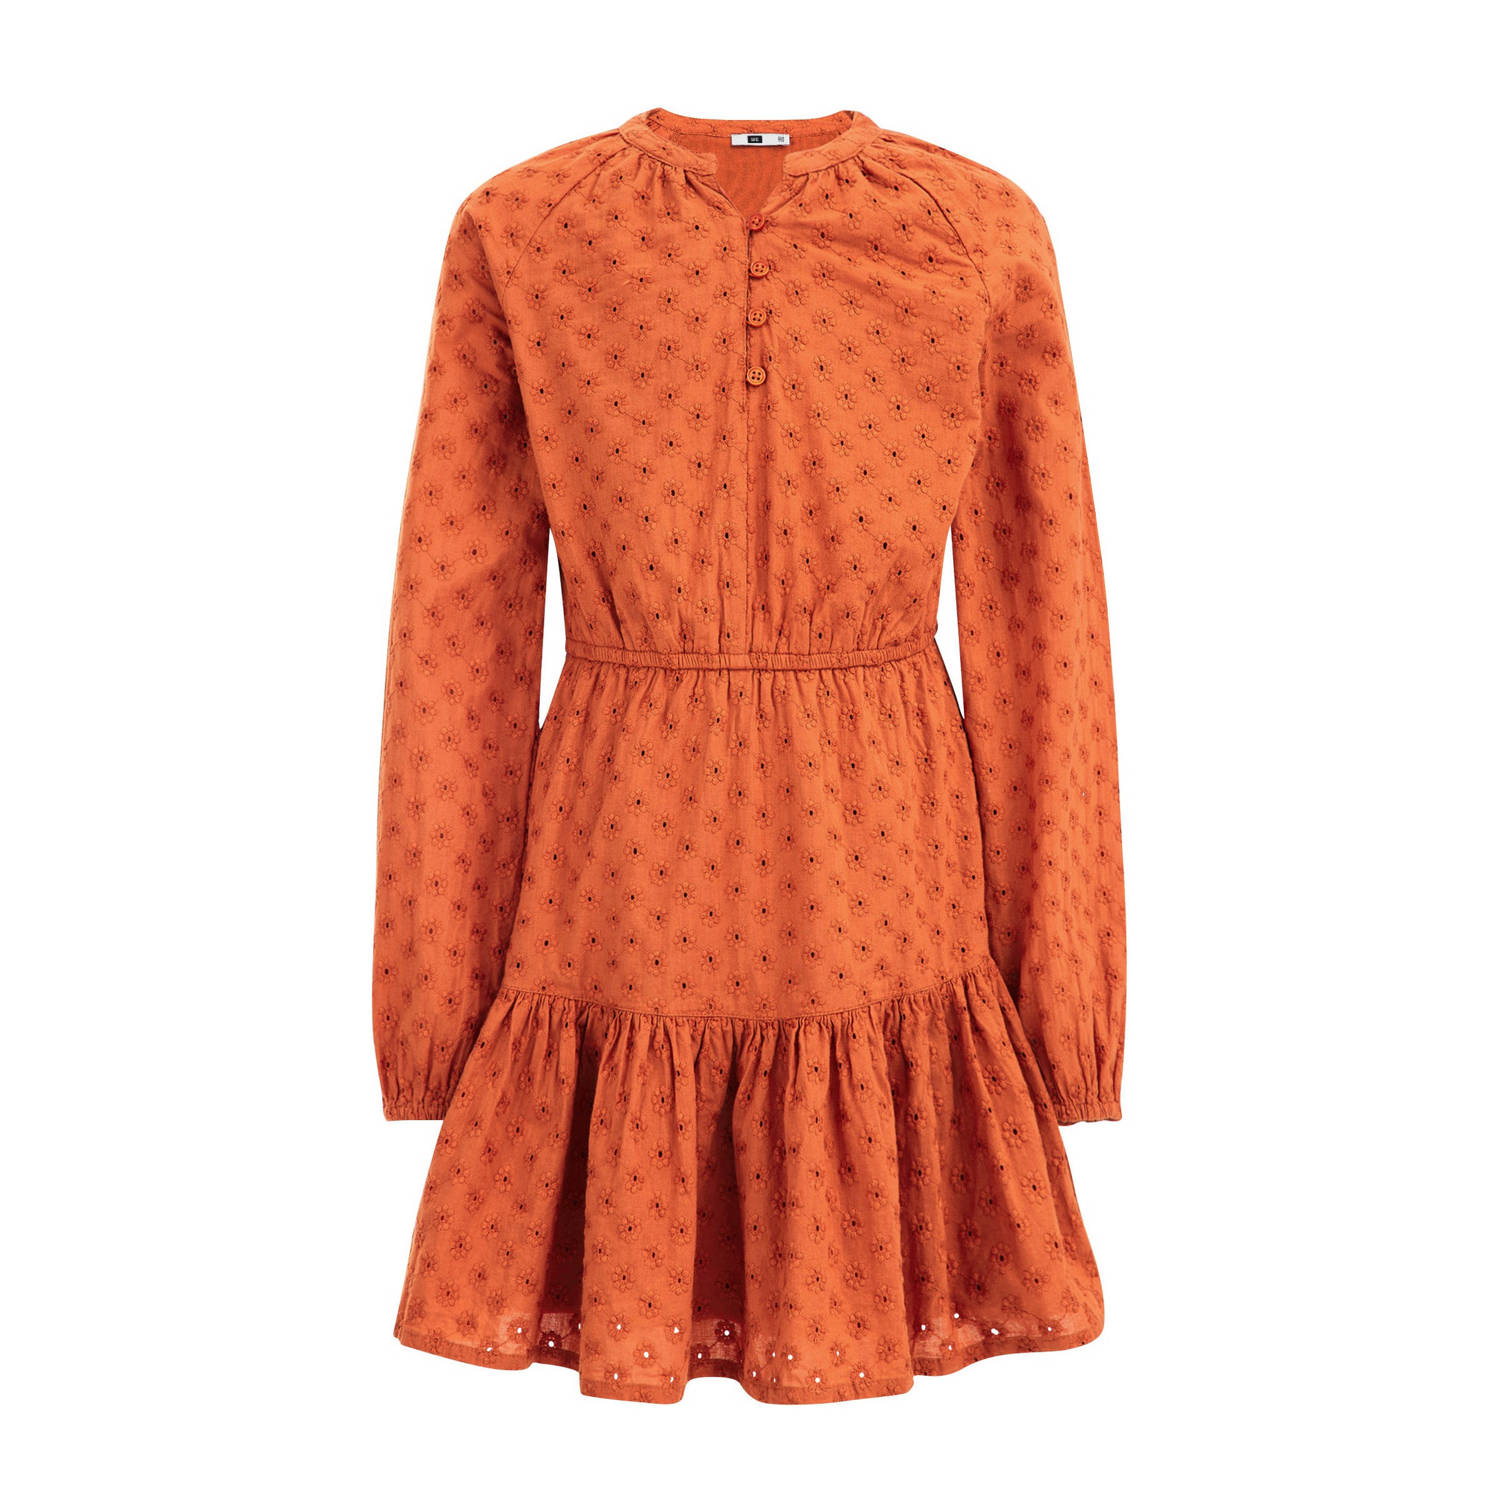 WE Fashion gebloemde jurk oranje bruin Meisjes Katoen Ronde hals Bloemen 110 116